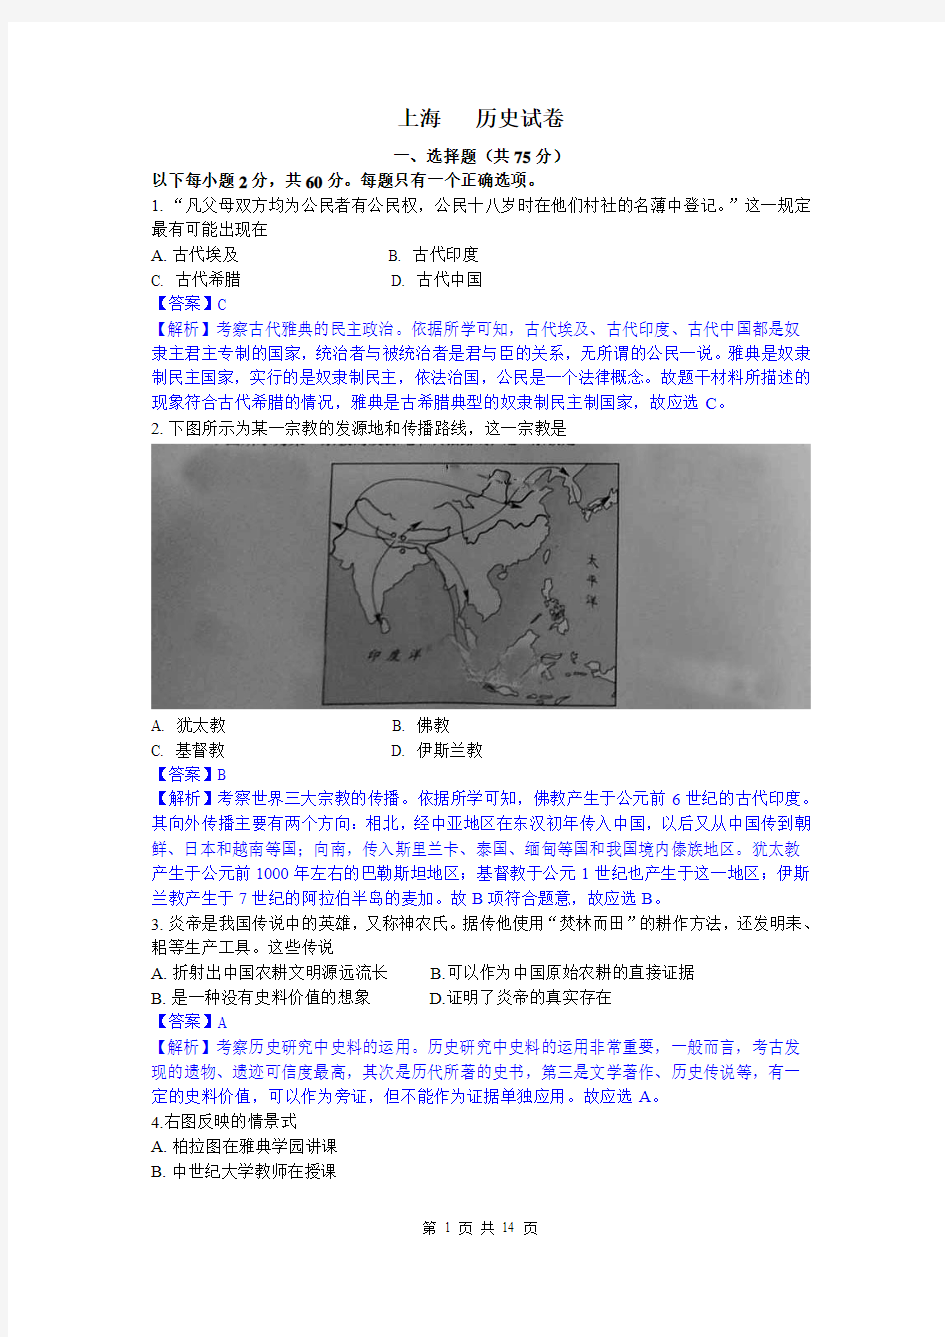 2014年高考真题——历史(上海卷)解析版 Word版含解析